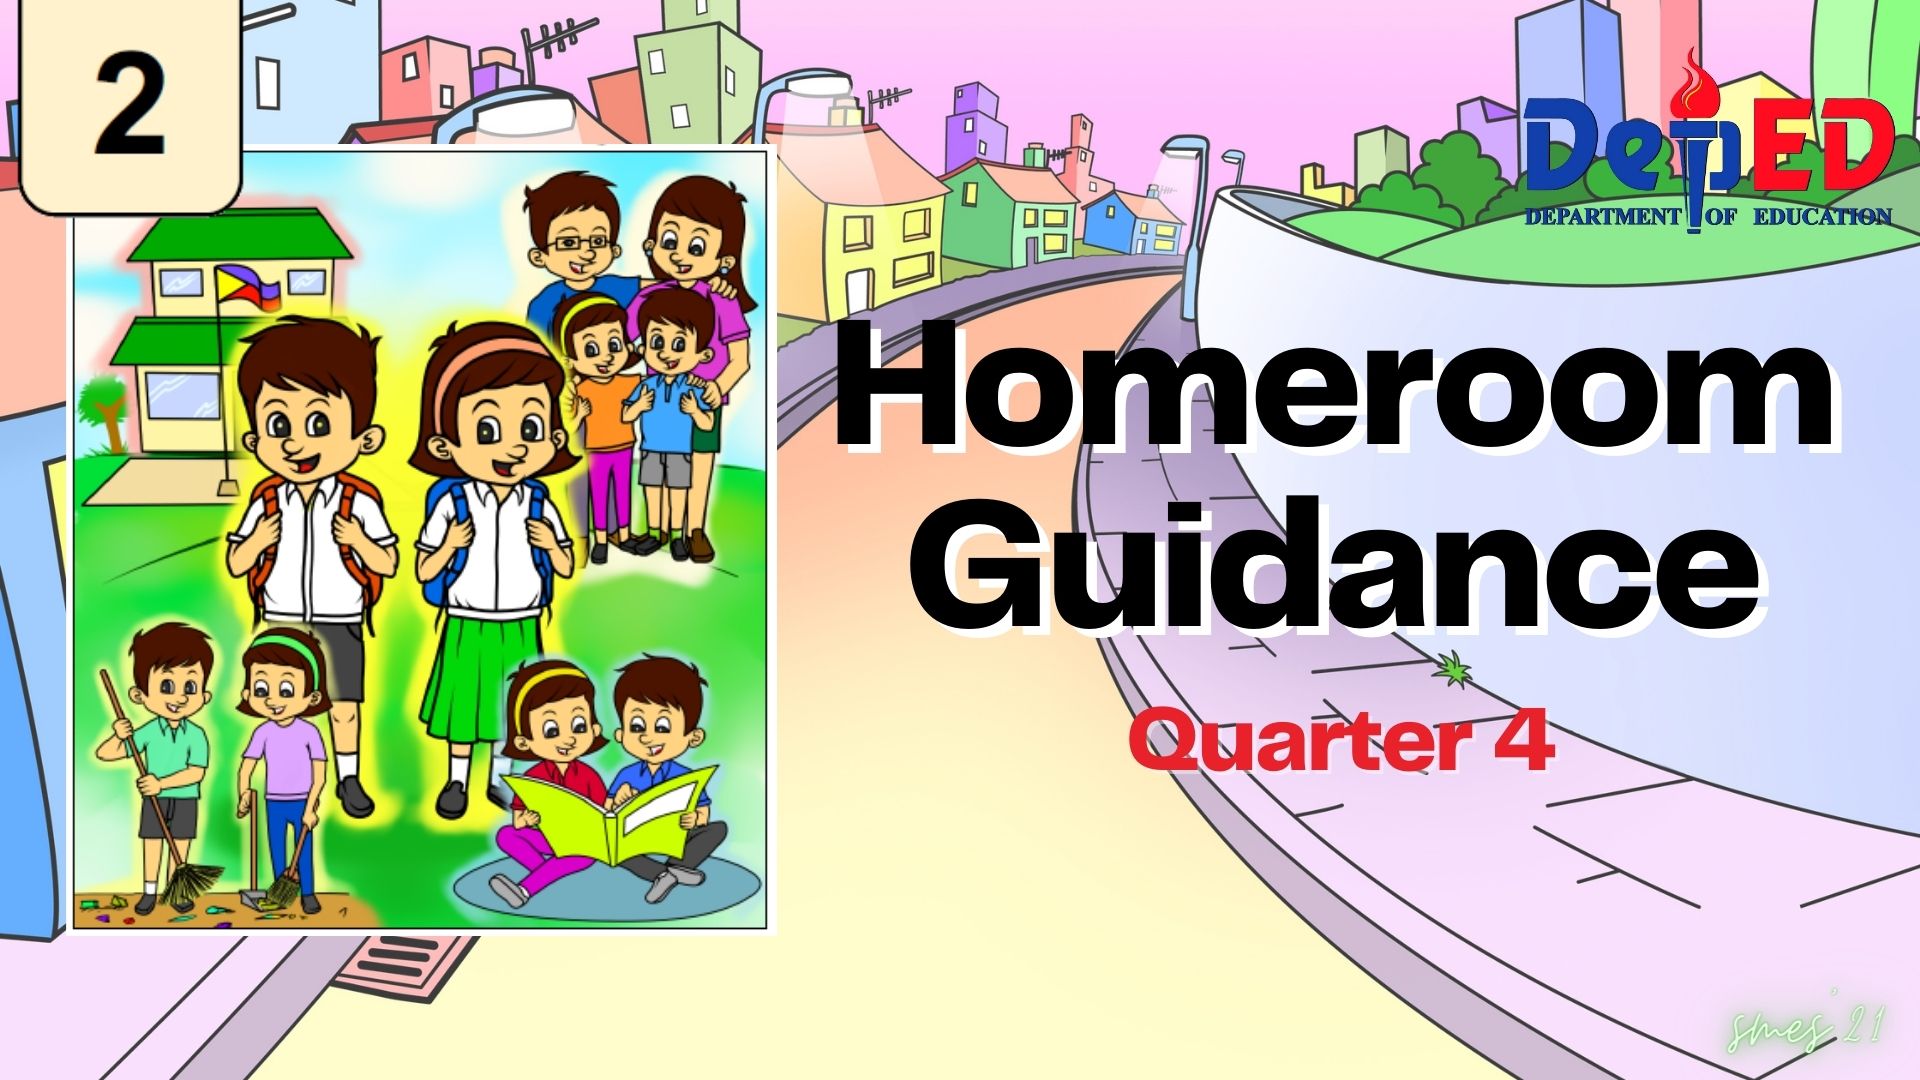 G2 - Homeroom Guidance Quarter 4 